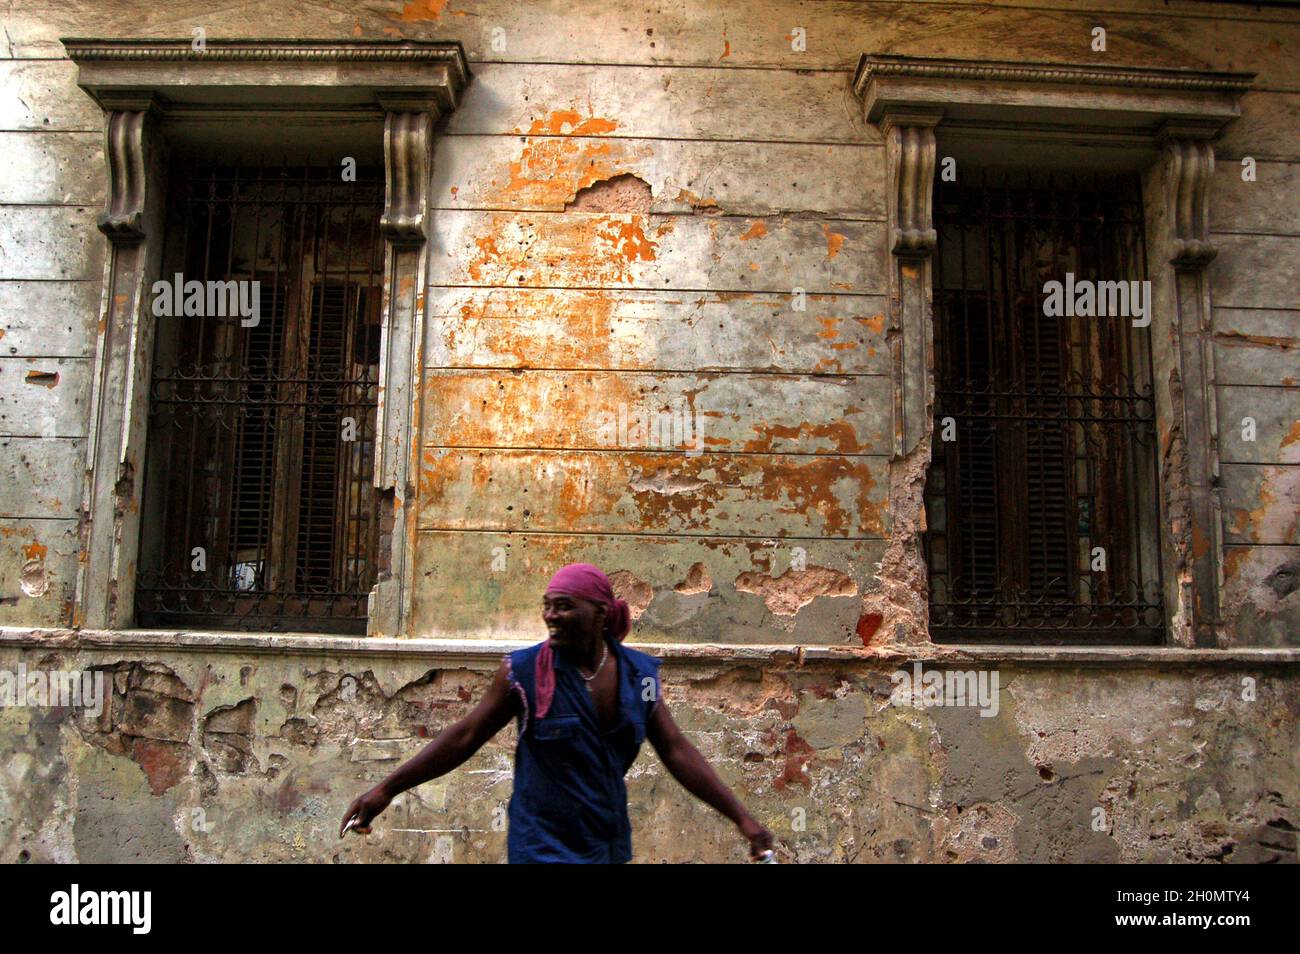 Un uomo contro un vecchio edificio. L'Avana, Cuba. Novembre 27, 2007. Ufficialmente conosciuta come Ciudad de la Habana, è la capitale, il porto principale e il principale centro commerciale di Cuba. La città è una delle 14 province cubane. Ci sono circa 2.4 milioni di abitanti, noti come Habaneros e tra questi quasi 400,000 vivono nella zona urbana rendendo l'Avana la città più grande sia a Cuba che nella regione dei Caraibi. Foto Stock